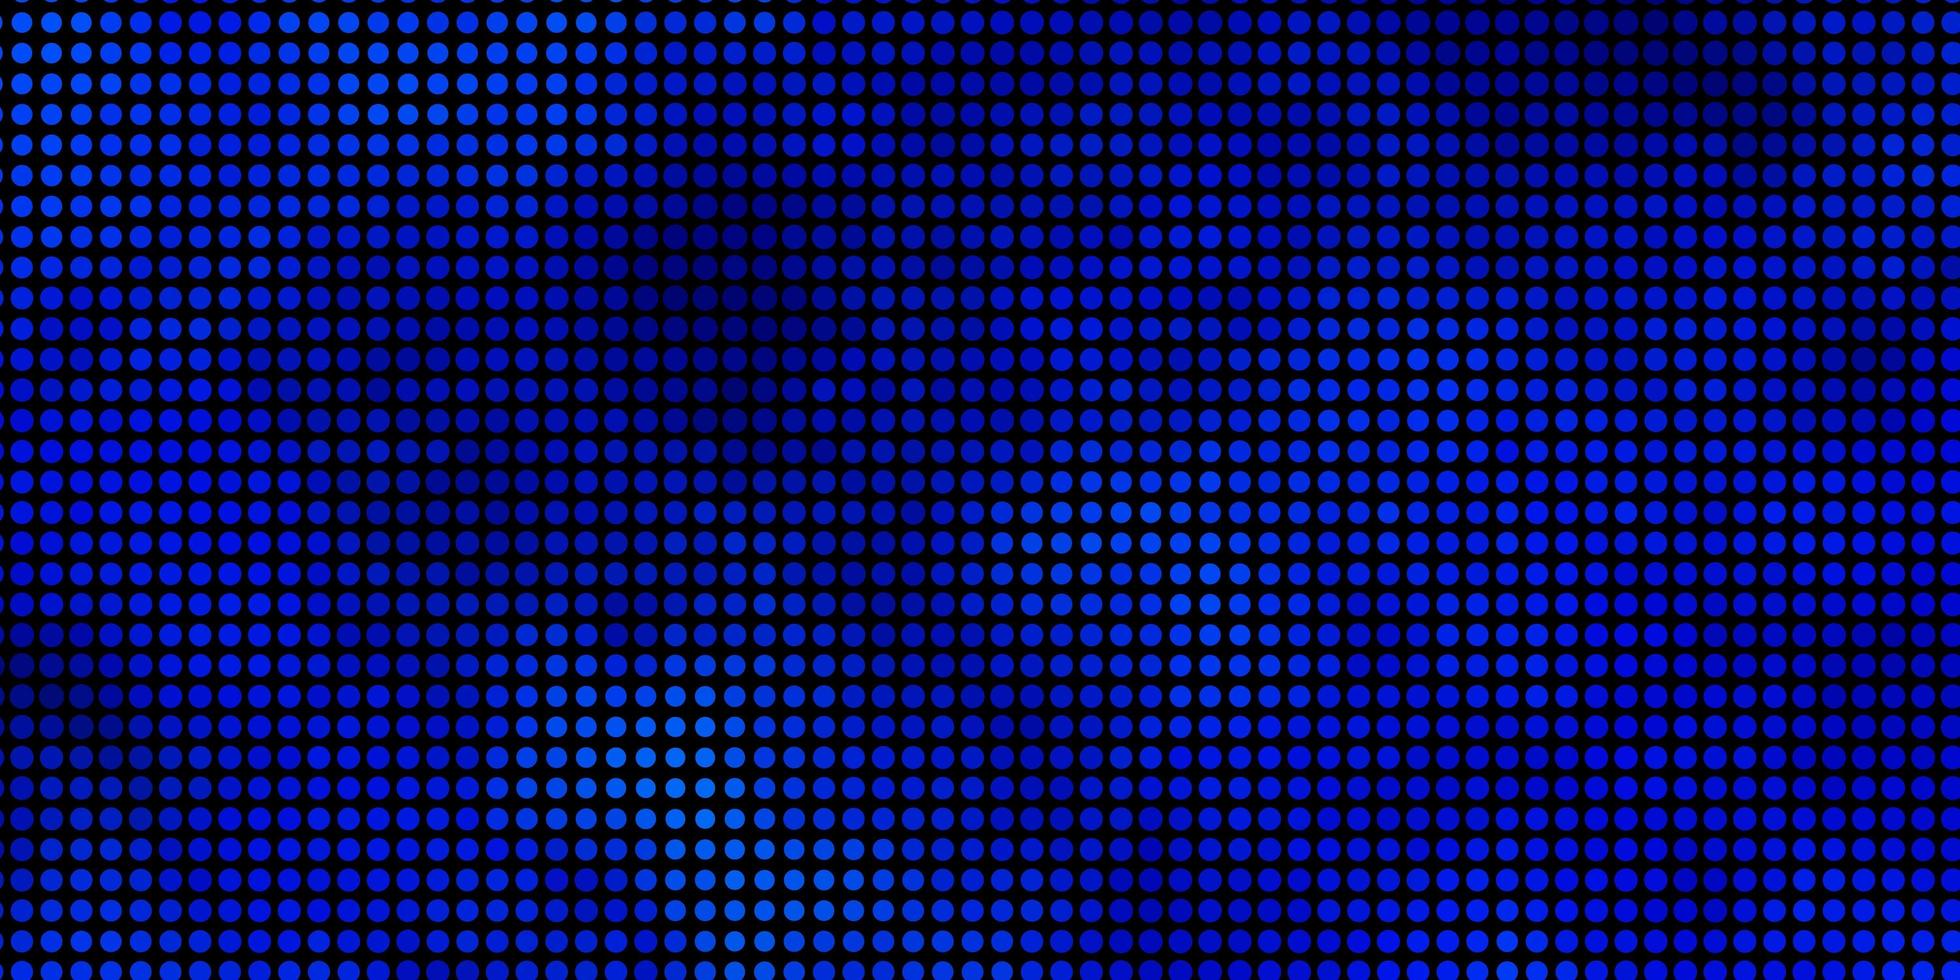 texture de vecteur bleu clair avec des cercles